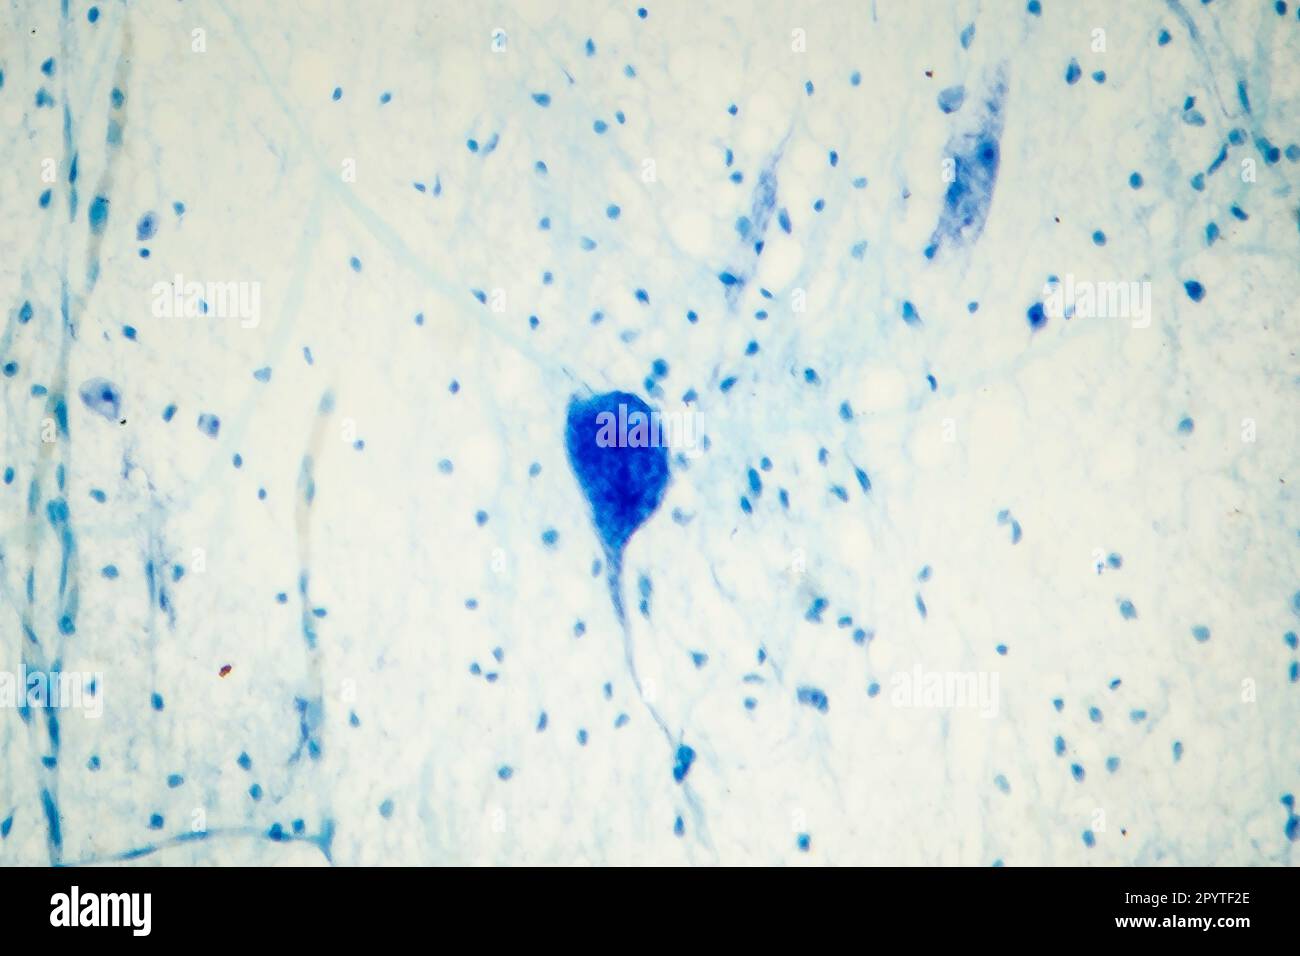 Lichtmikrographische Darstellung menschlicher Hirngewebe mit Neuronen und Gliazellen Stockfoto